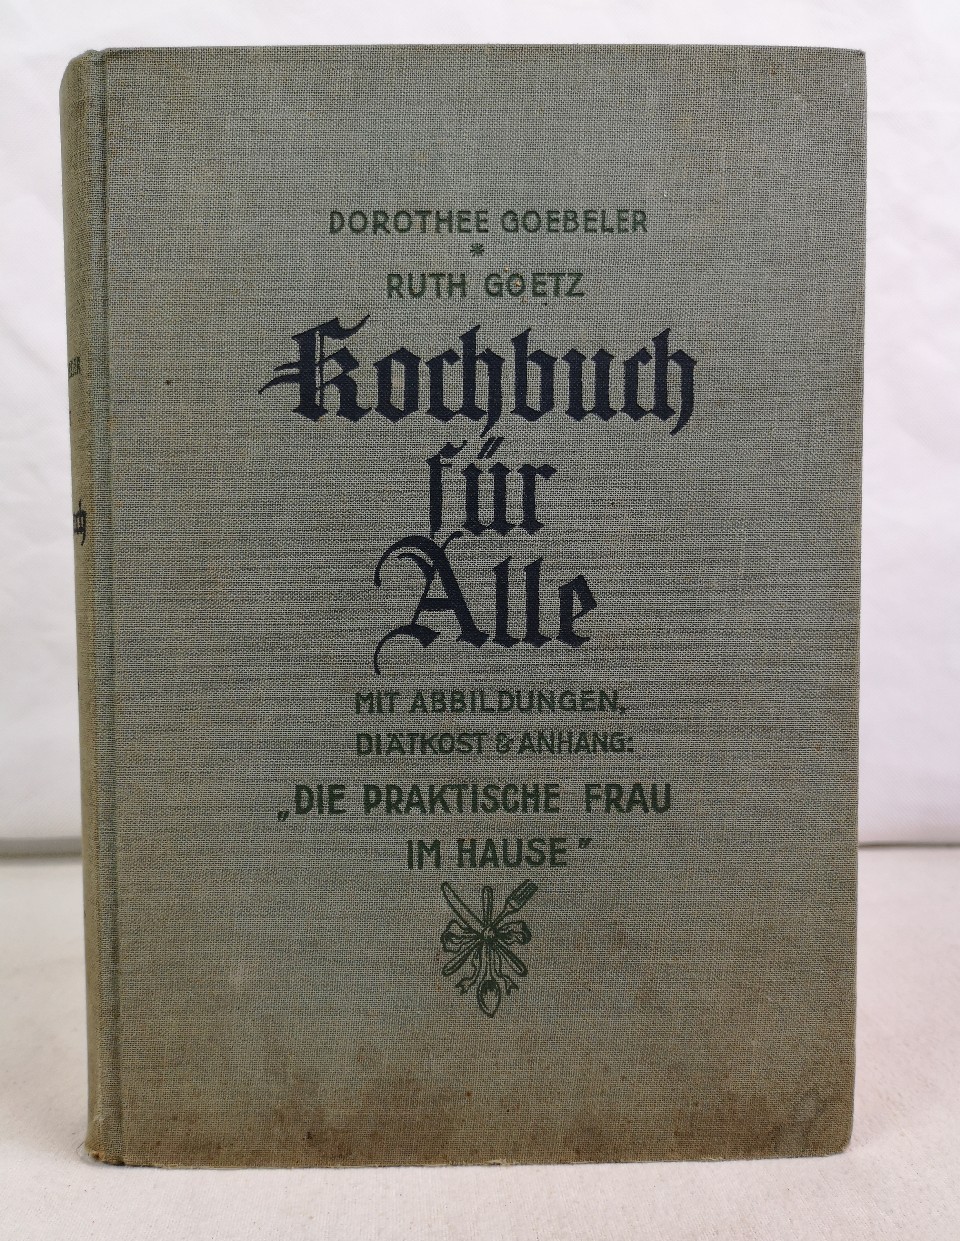 Goebeler, Dorothee und Ruth (Hrsg.) Goetz:  Kochbuch fr Alle. Mit Abbildungen, Ditkost und Anhang: 